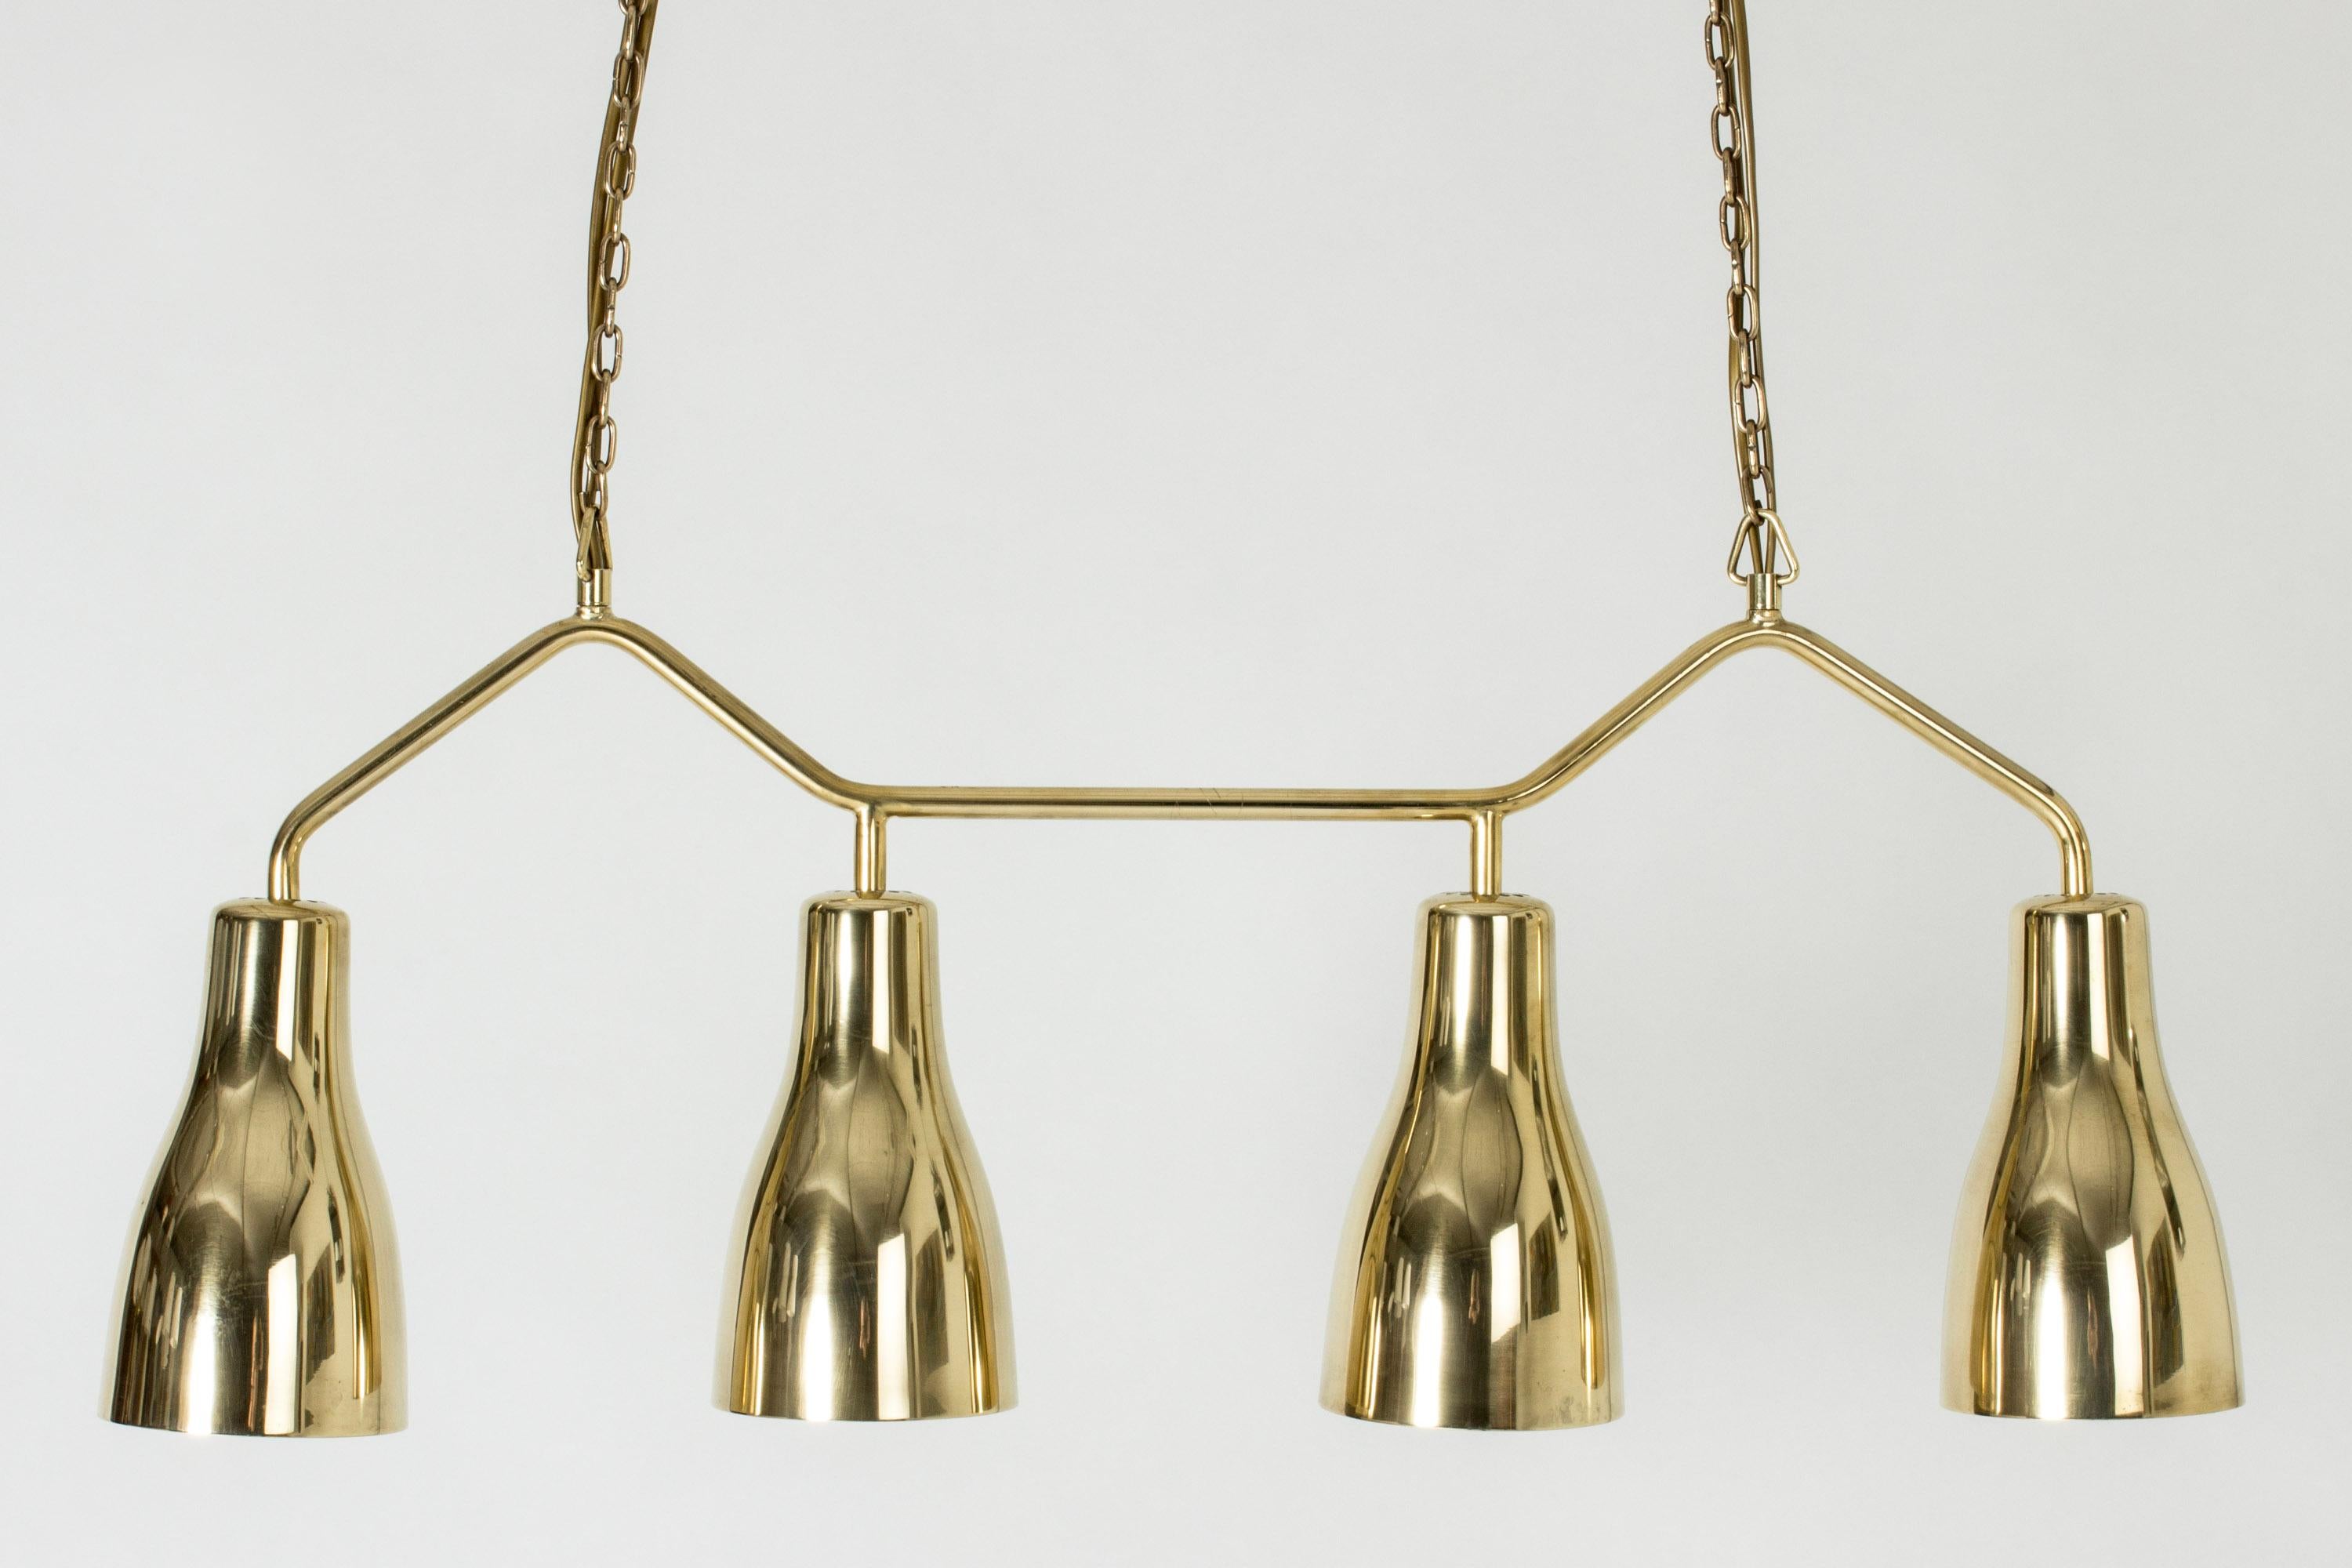 Kronleuchter aus Messing von Hans Bergström, in schlichtem Design mit vier aufeinander abgestimmten Lampenschirmen. Aufgehängt an einer Kette, die in der Länge verstellbar ist, bis zu 187 cm. Die Leuchte ist perfekt für eine Küchentheke oder